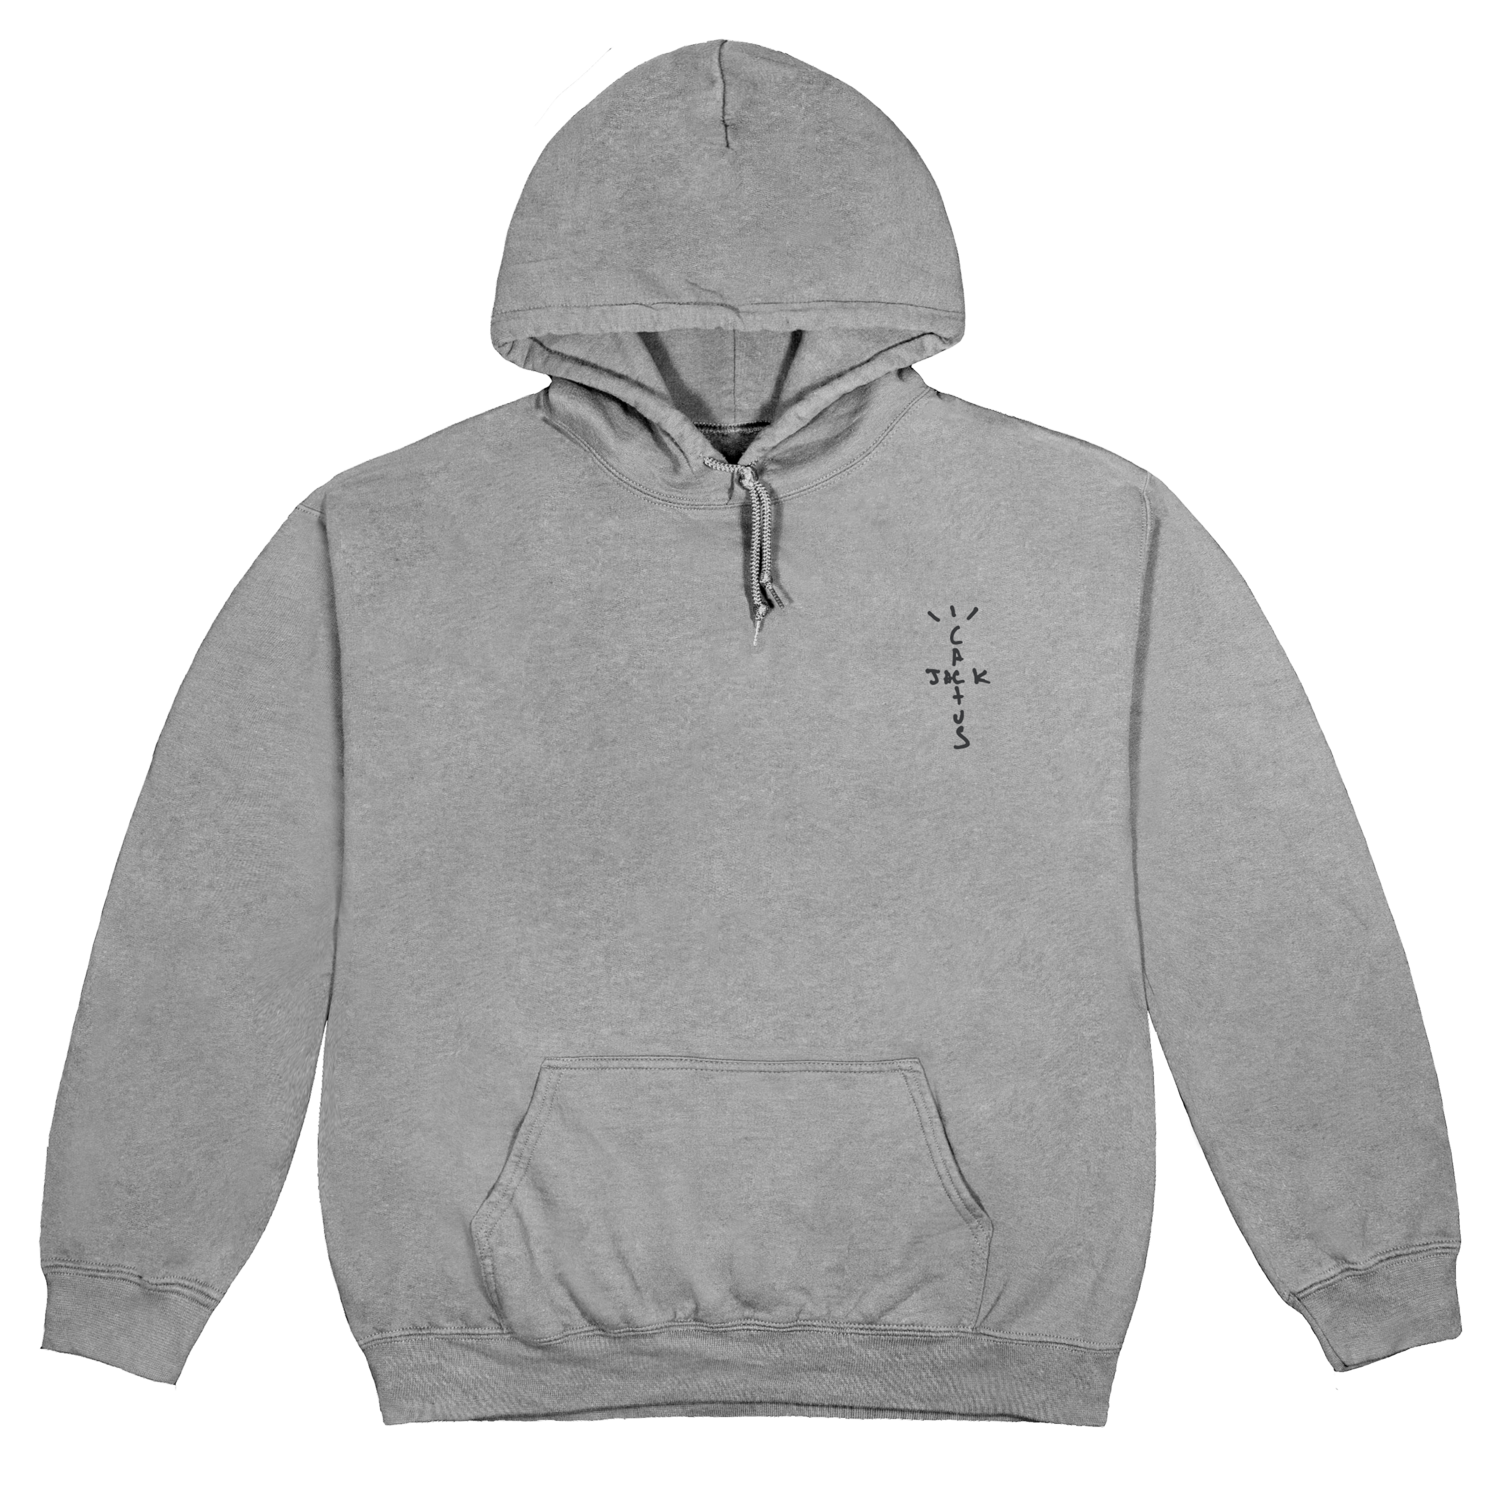 travis scott hoodie stockx